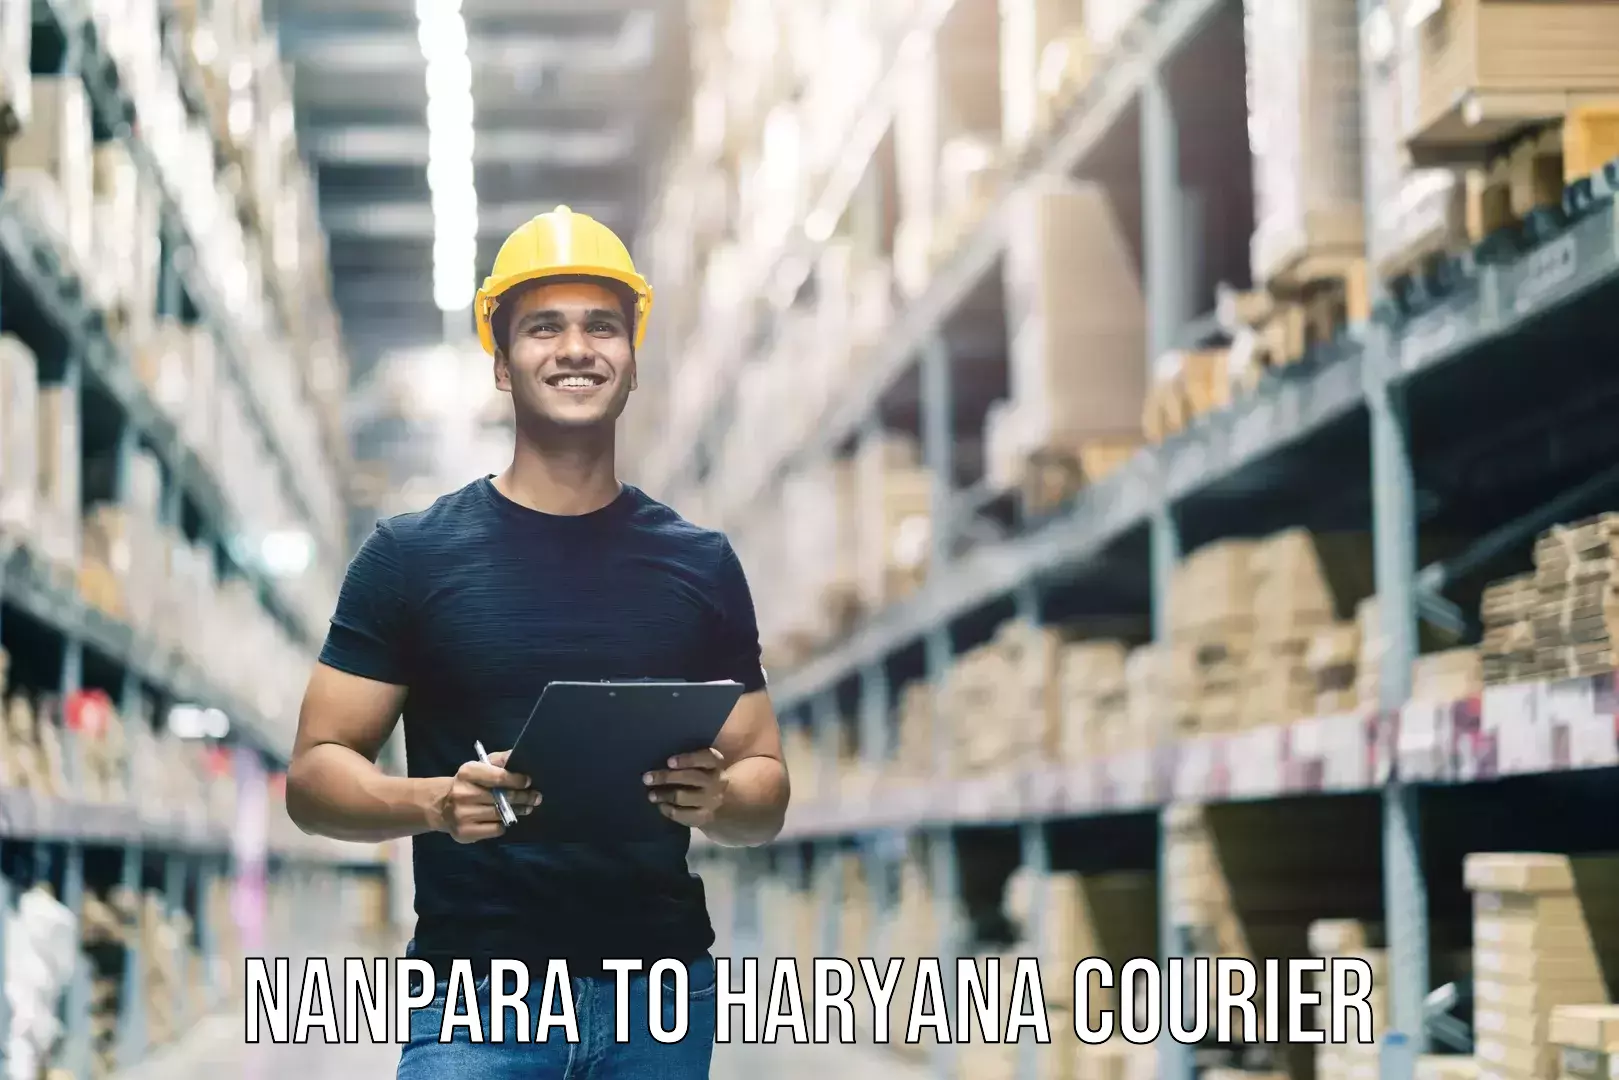 Baggage shipping service Nanpara to Haryana